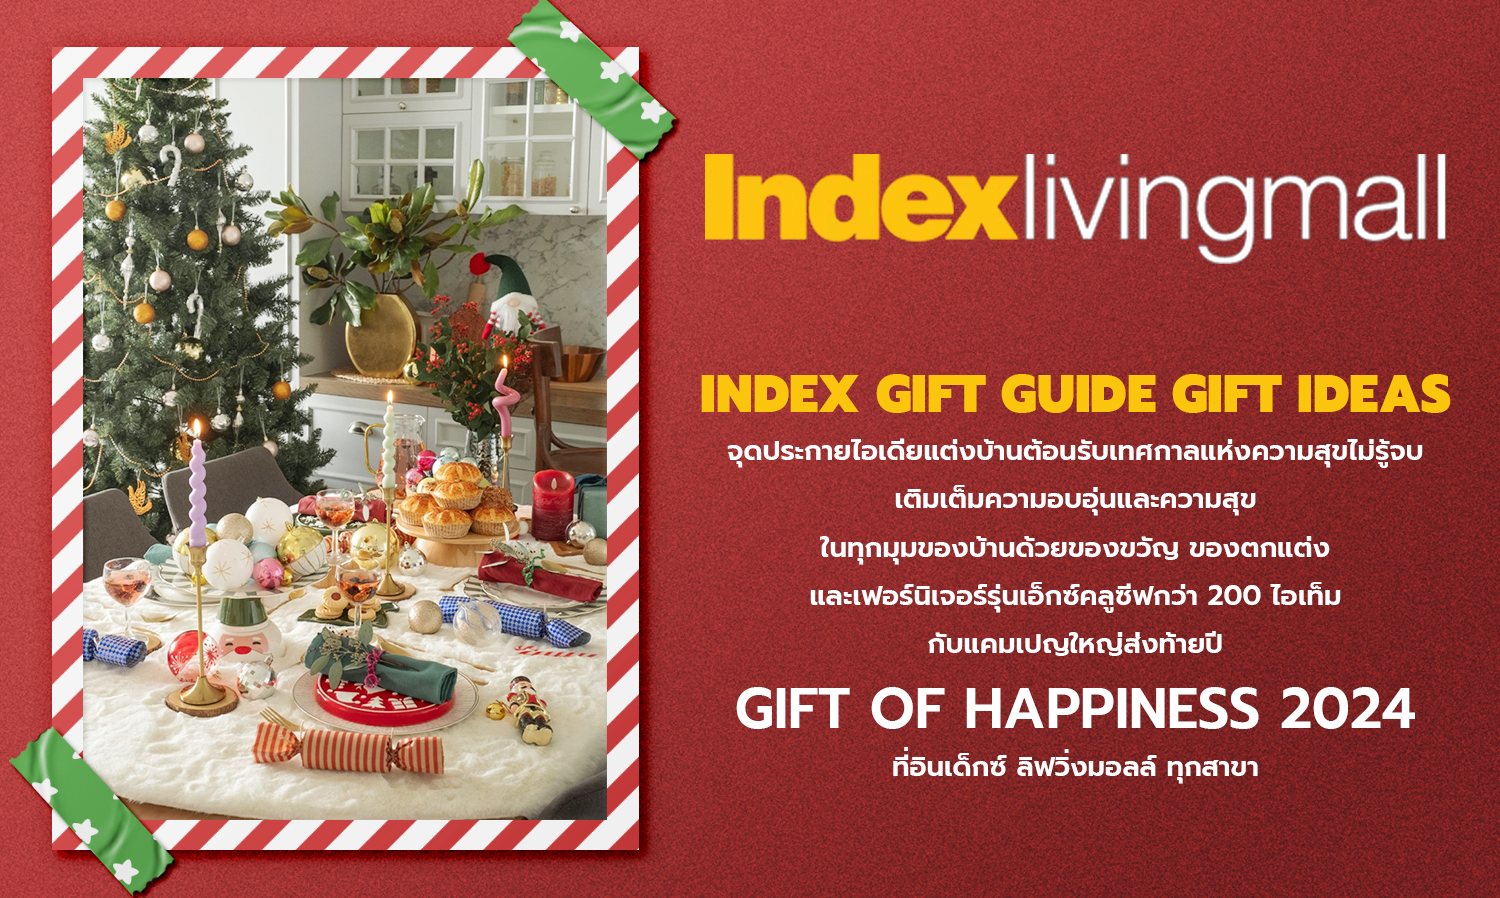 index-gift-guide-gift-ideas-จุดประกายไอเดียแต่งบ้านต